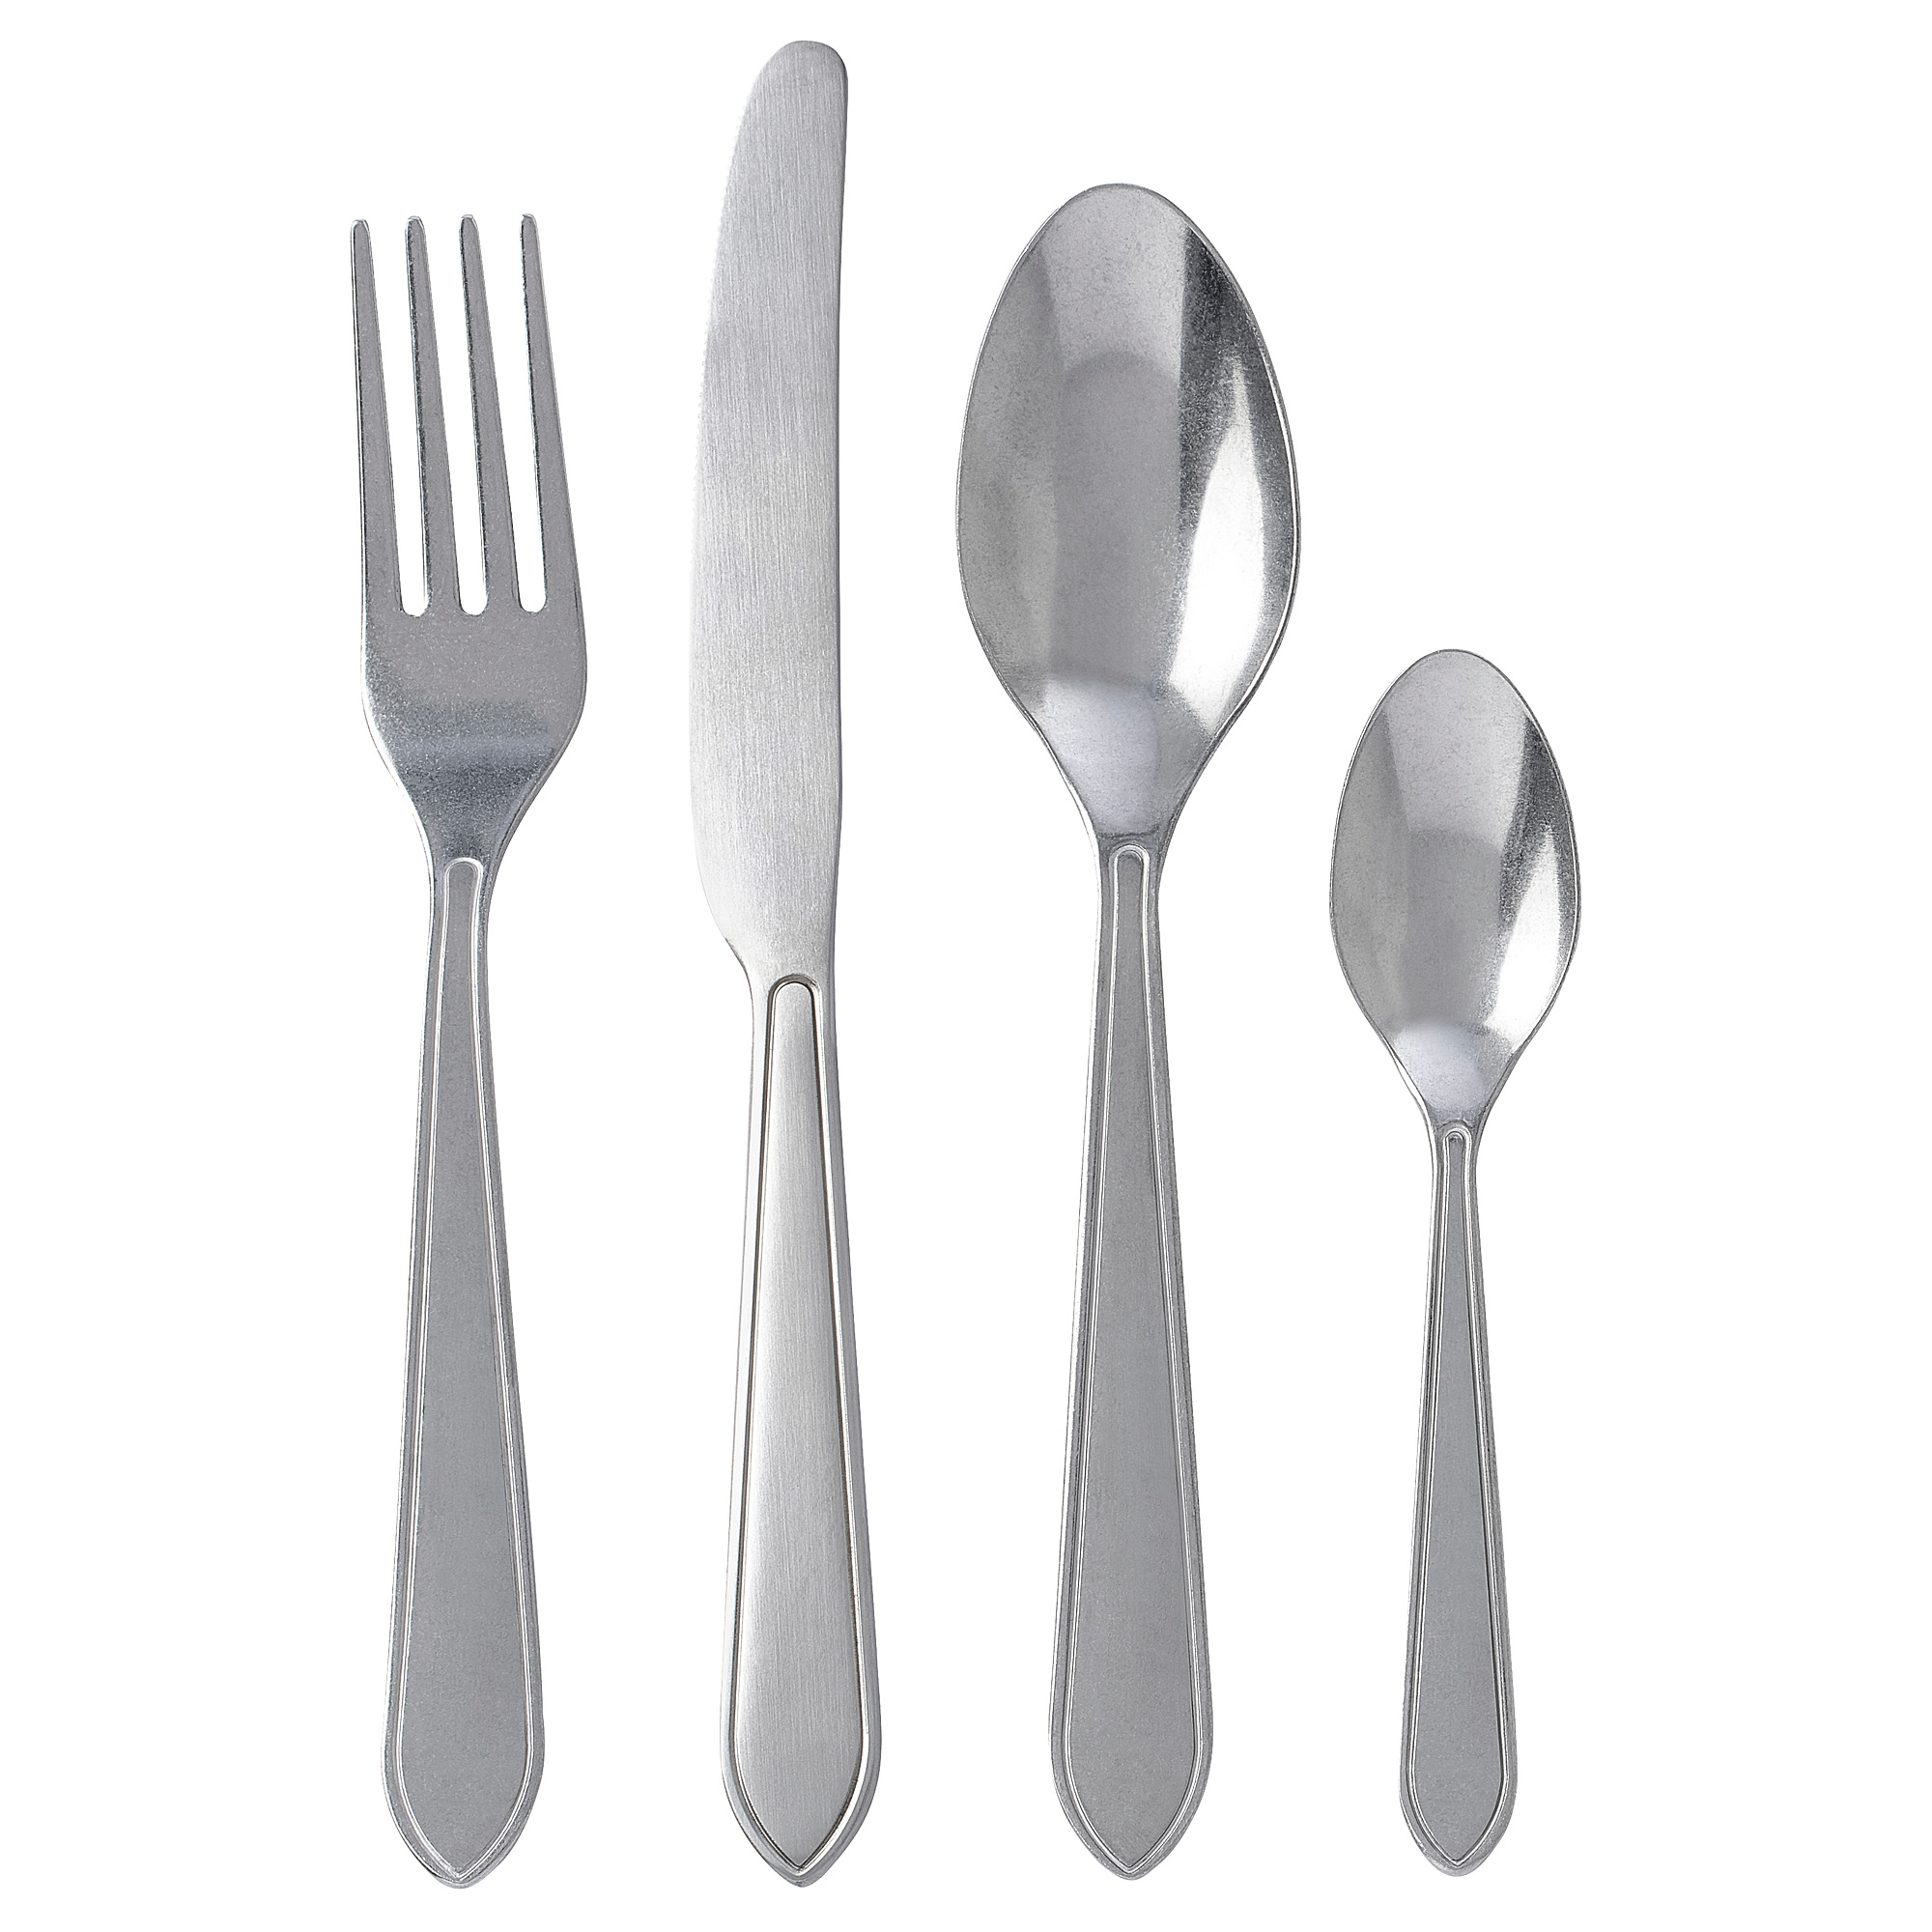 IDENTITET 16-piece cutlery set